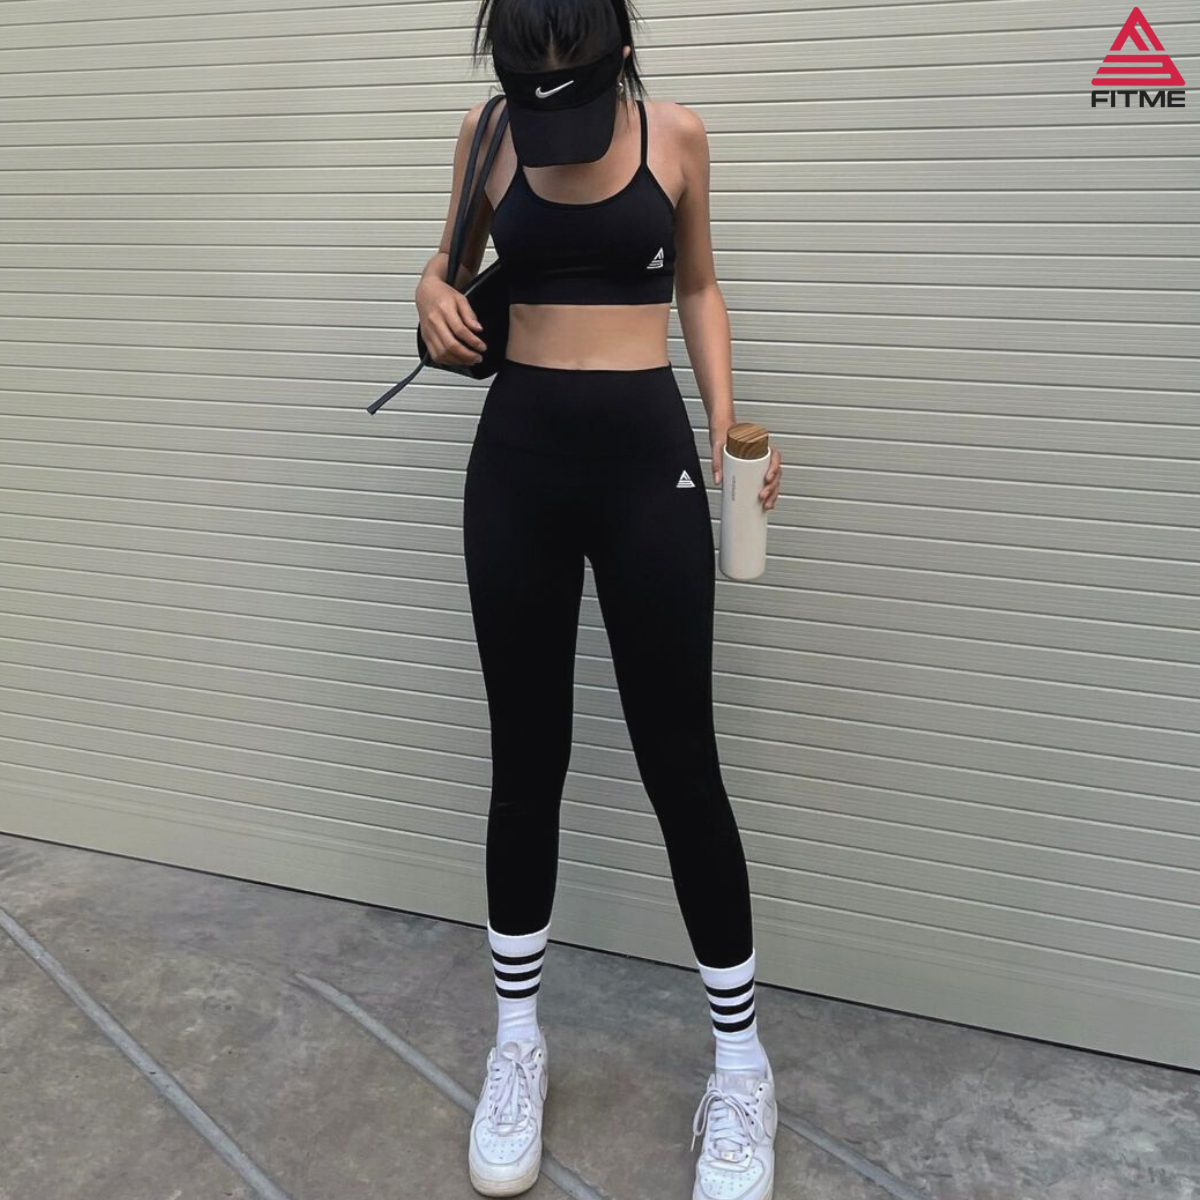 Quần legging nữ Fitme Zeta nâng mông cao cấp chất liệu dày dặn cạp cao chuyên tập gym và tập yoga